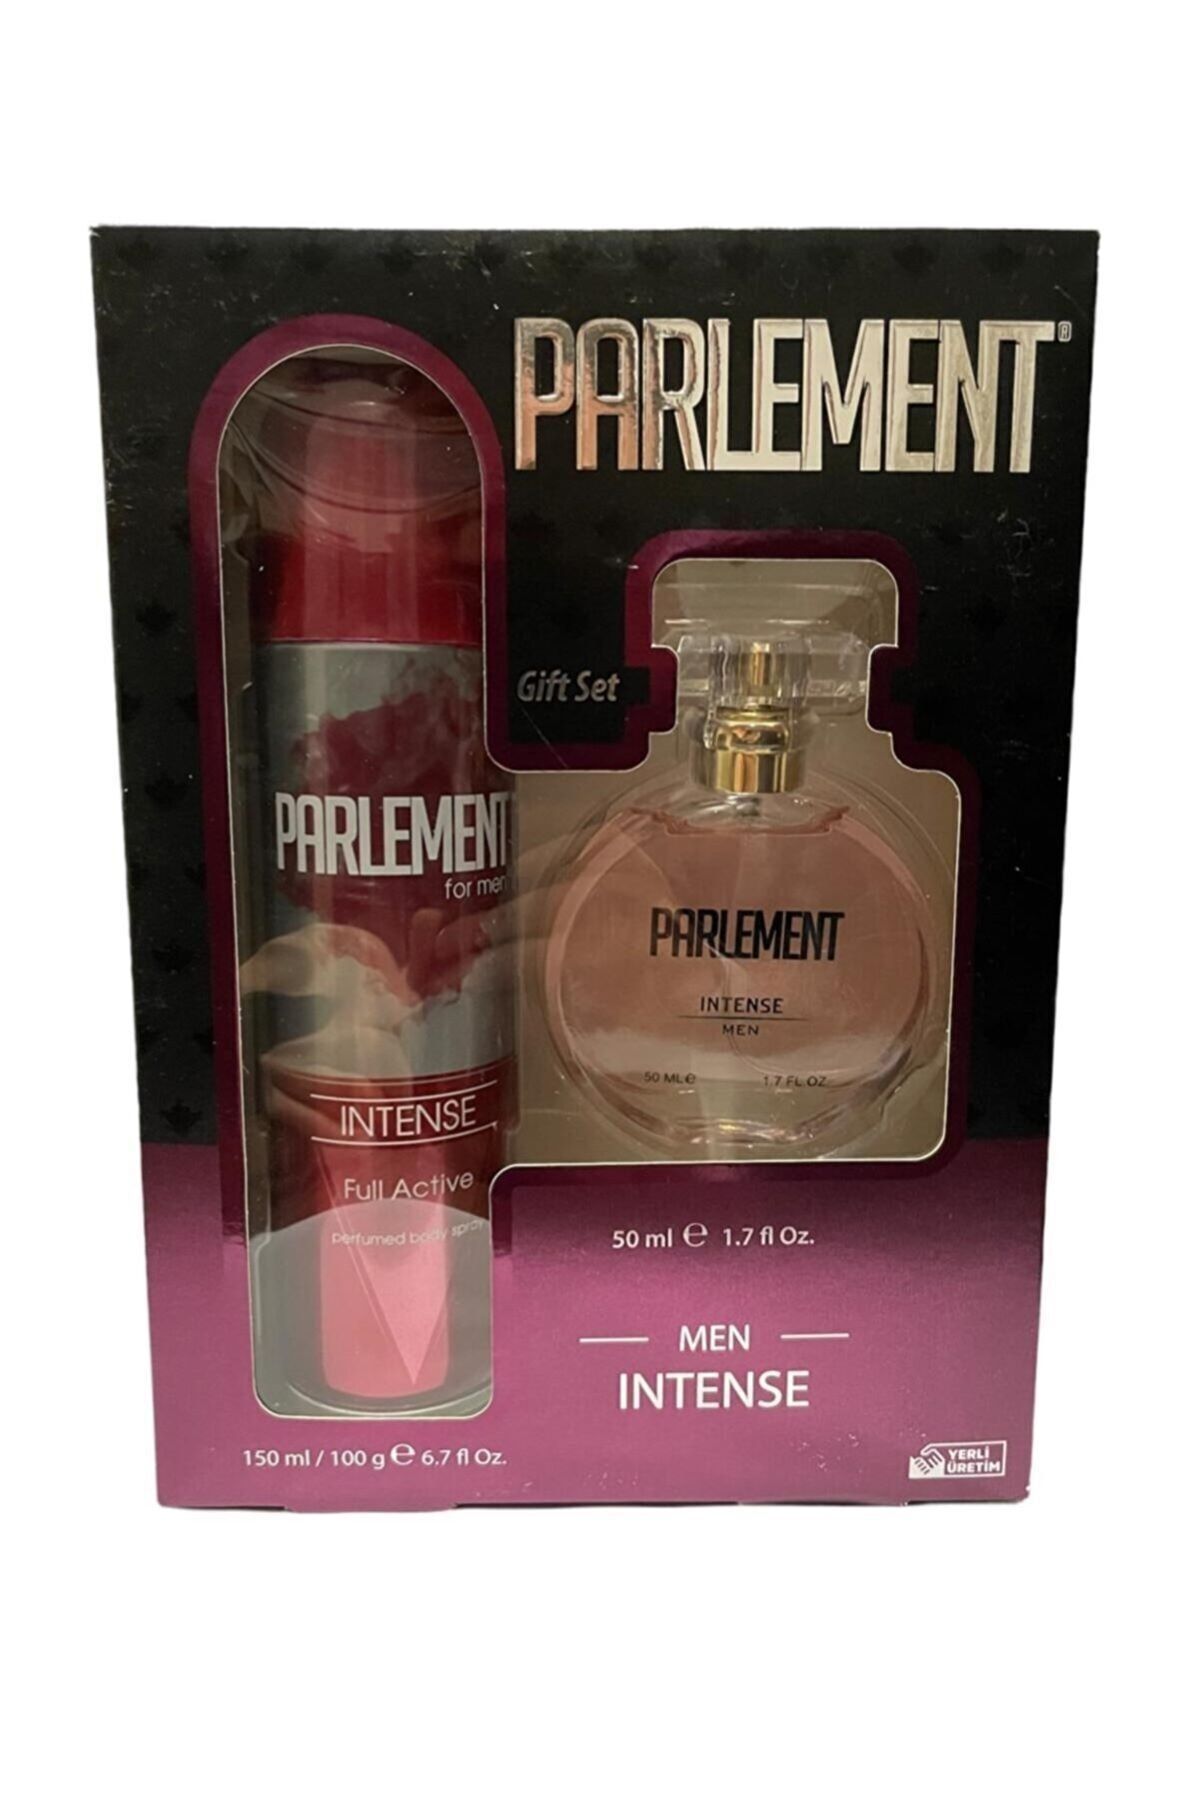 Parlement Erkek Parfüm Set Intense Erkek Parfüm Deodorant Wordly-3535